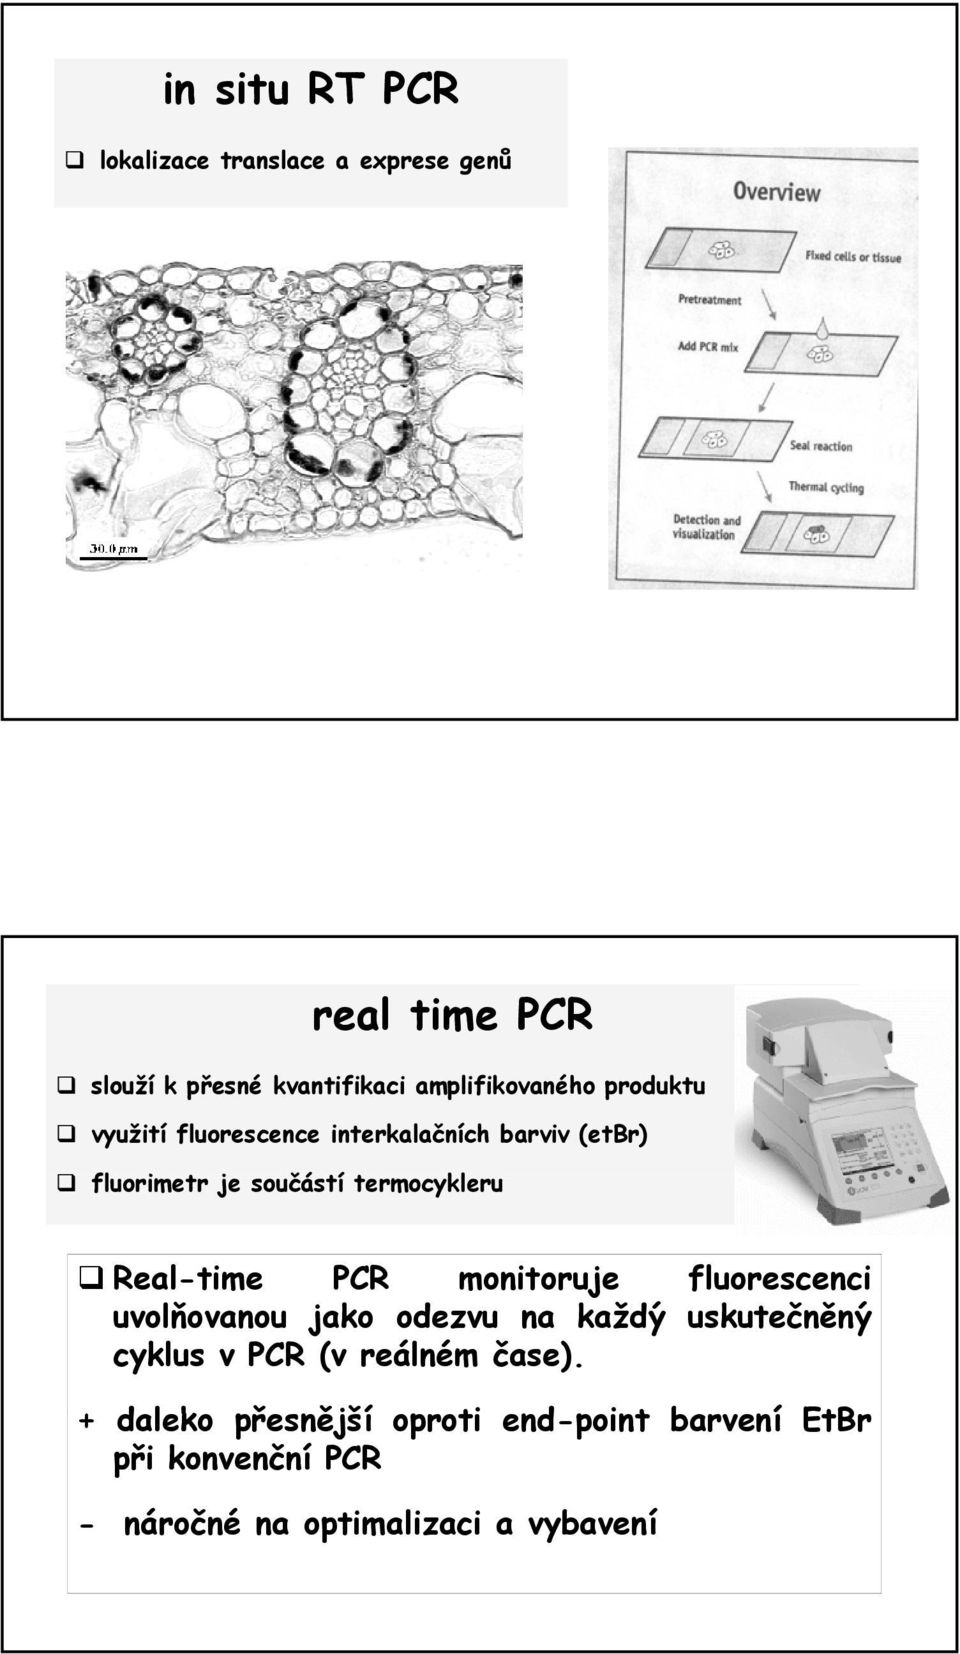 termocykleru Real-time PCR monitoruje fluorescenci uvolňovanou jako odezvu na každý uskutečněný cyklus v